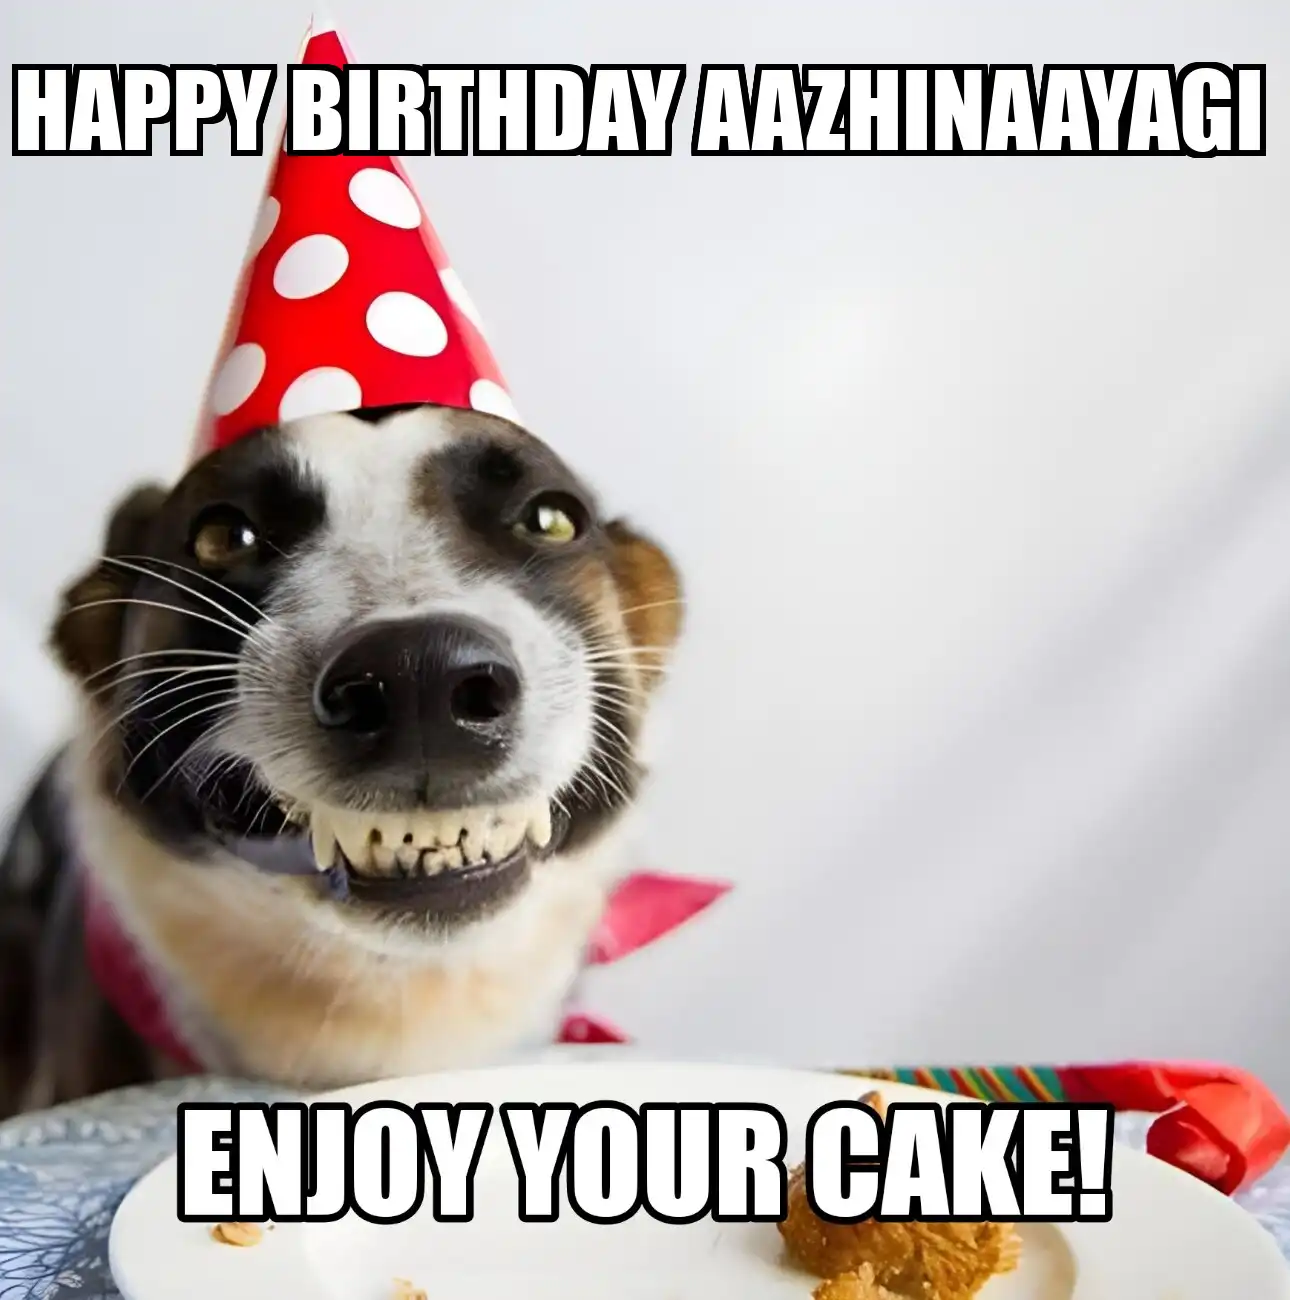 Happy Birthday Aazhinaayagi Enjoy Your Cake Dog Meme